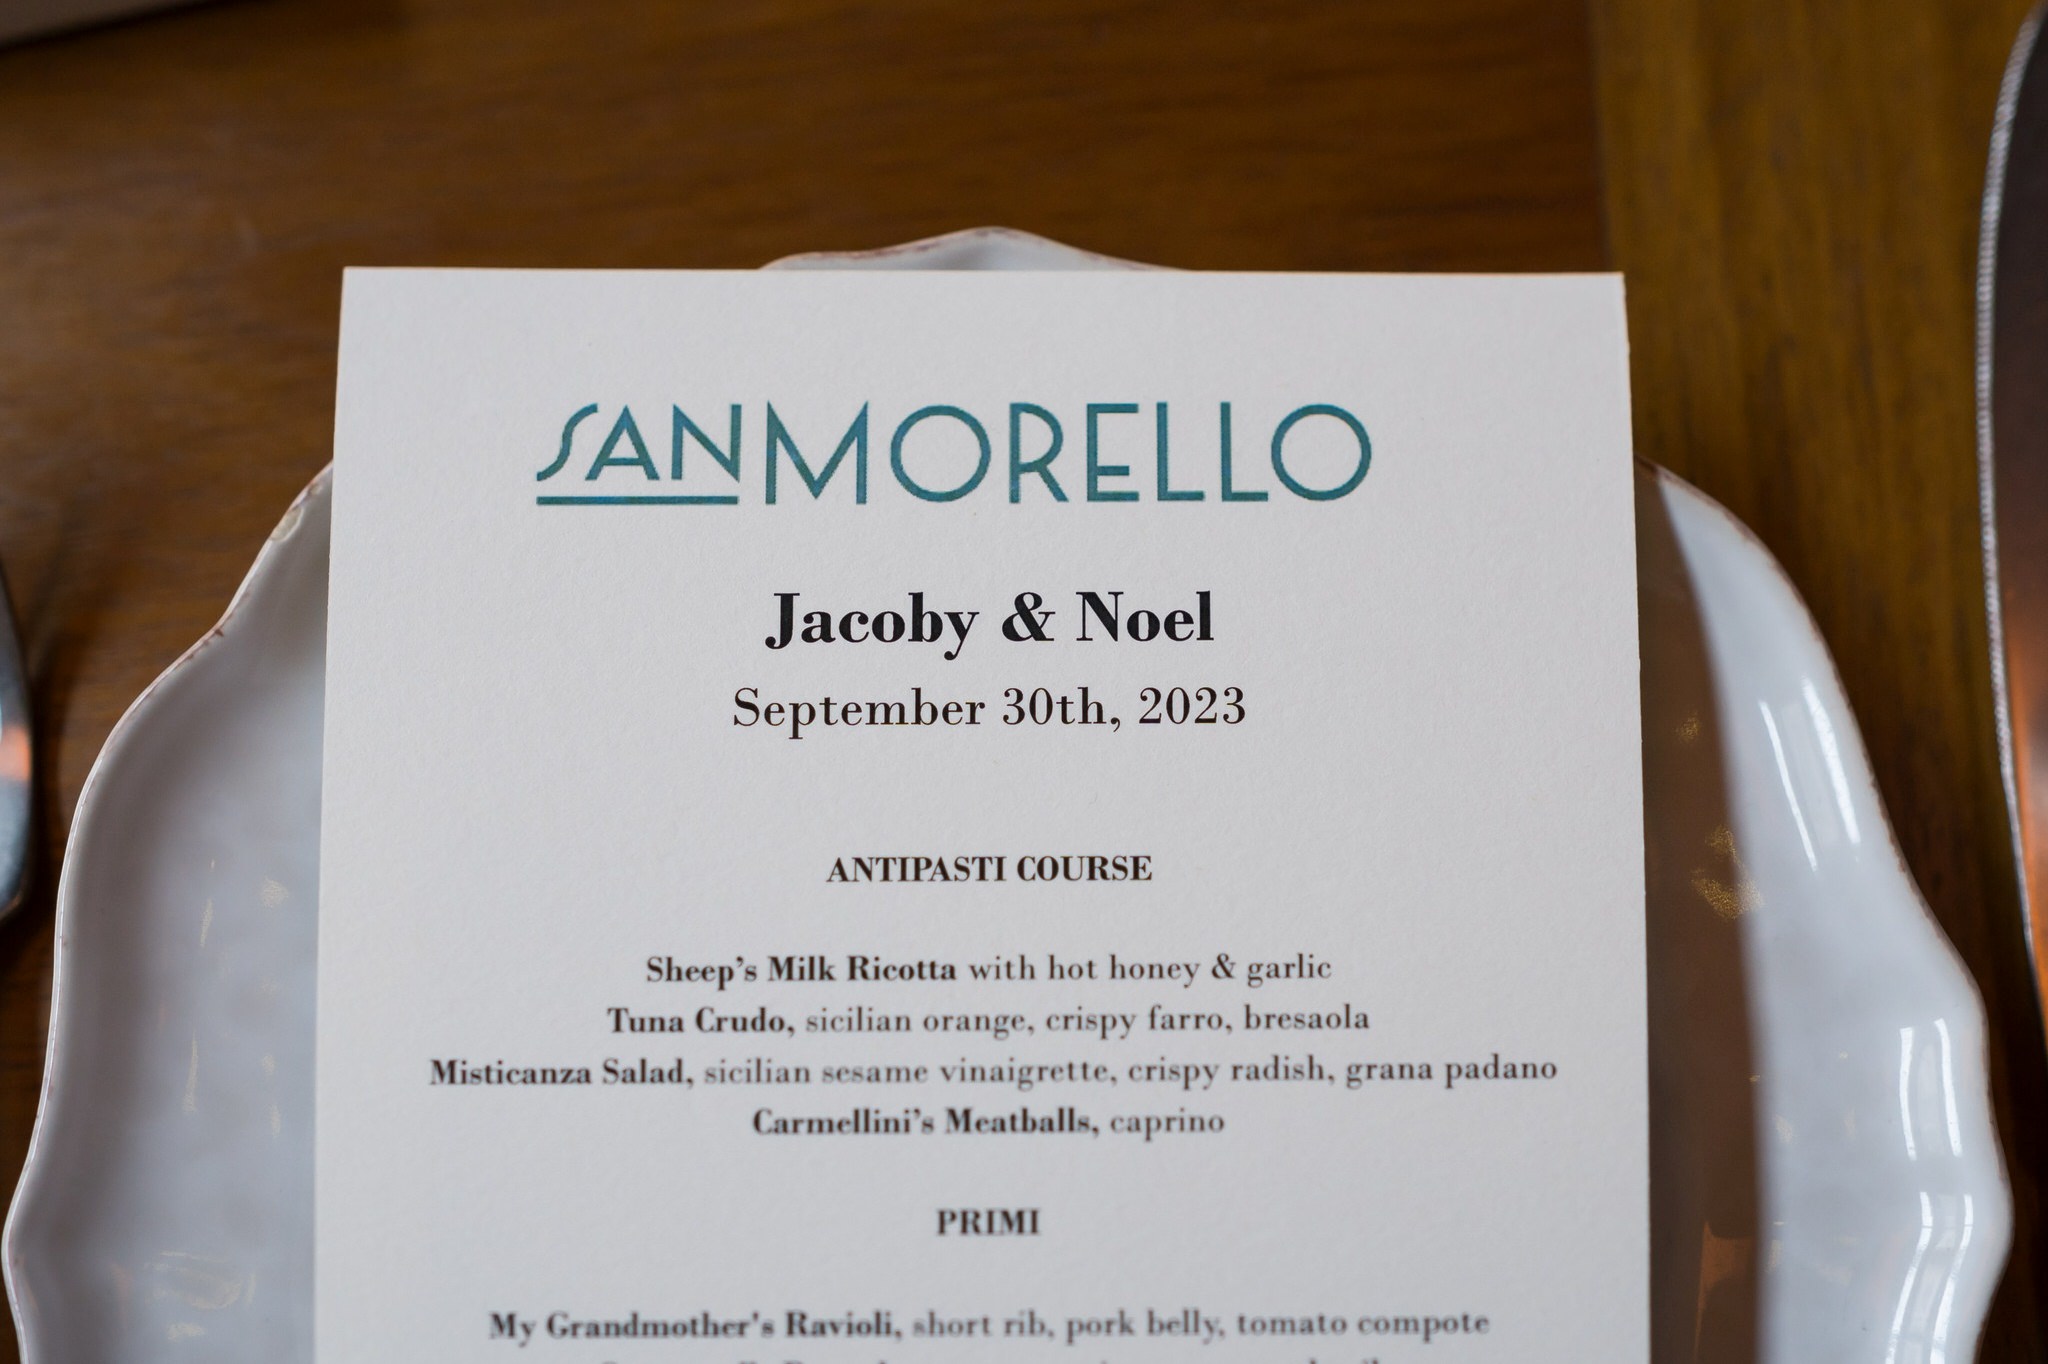 A customized menu from a San Morello wedding.  